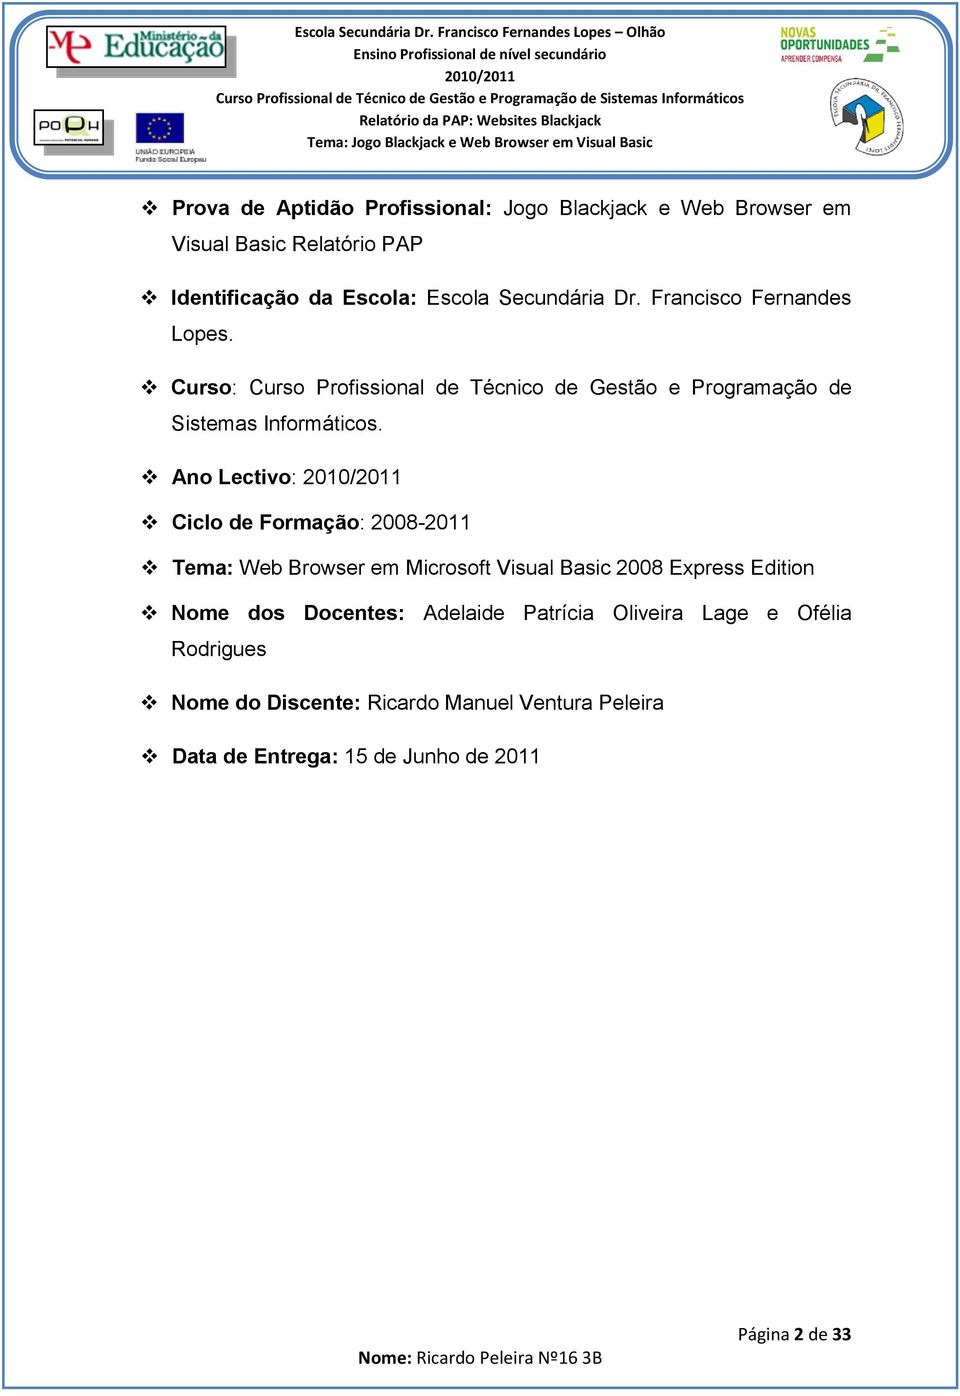 Ano Lectivo: Ciclo de Formação: 2008-2011 Tema: Web Browser em Microsoft Visual Basic 2008 Express Edition Nome dos Docentes: